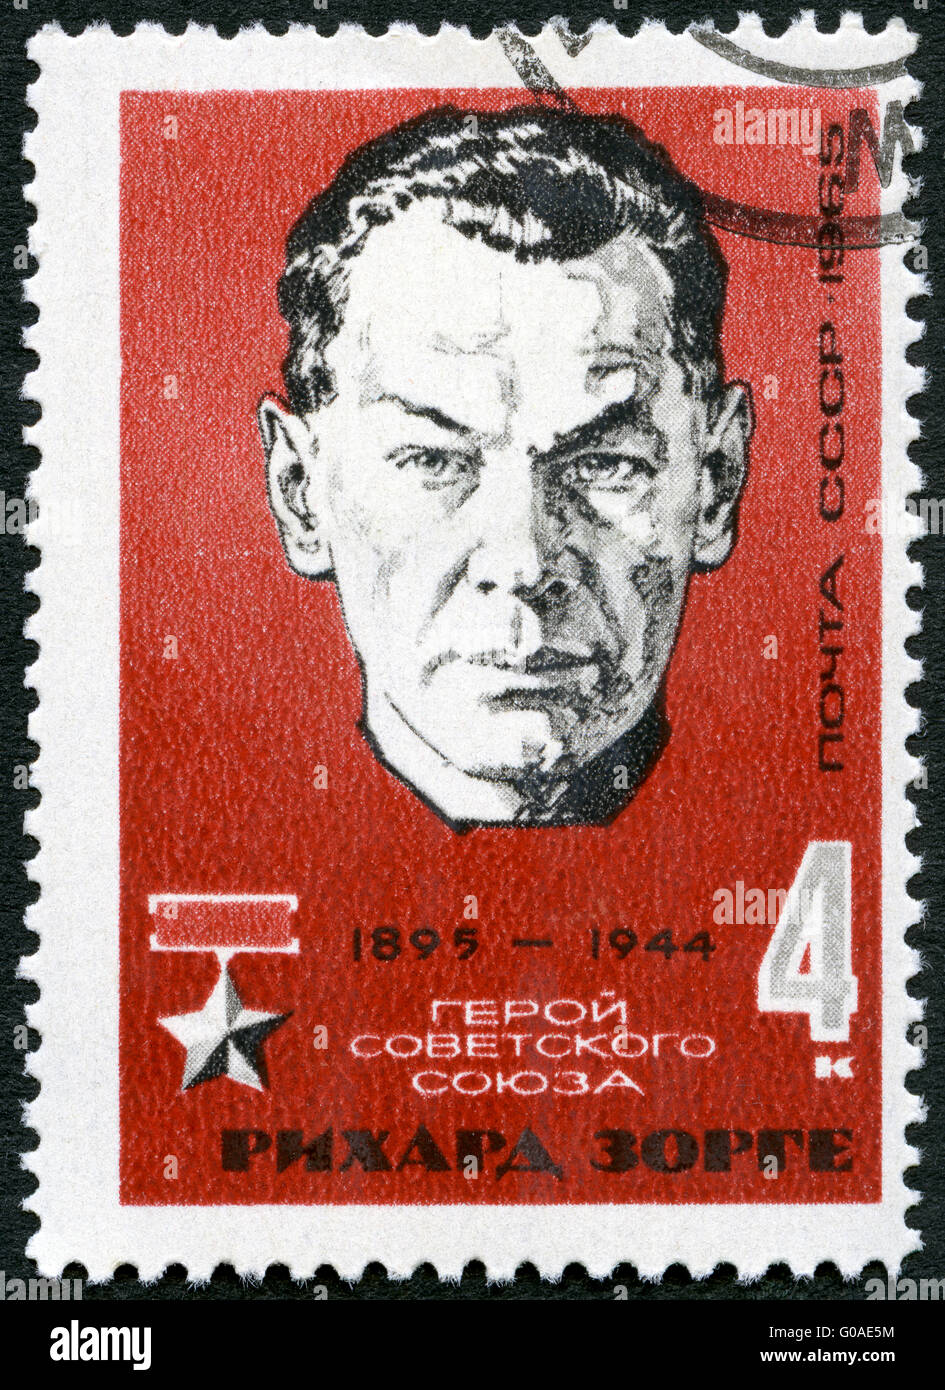 Urss - 1965 : affiche portrait de Richard Sorge (1895-1944), espion soviétique et héros de l'Union Soviétique Banque D'Images